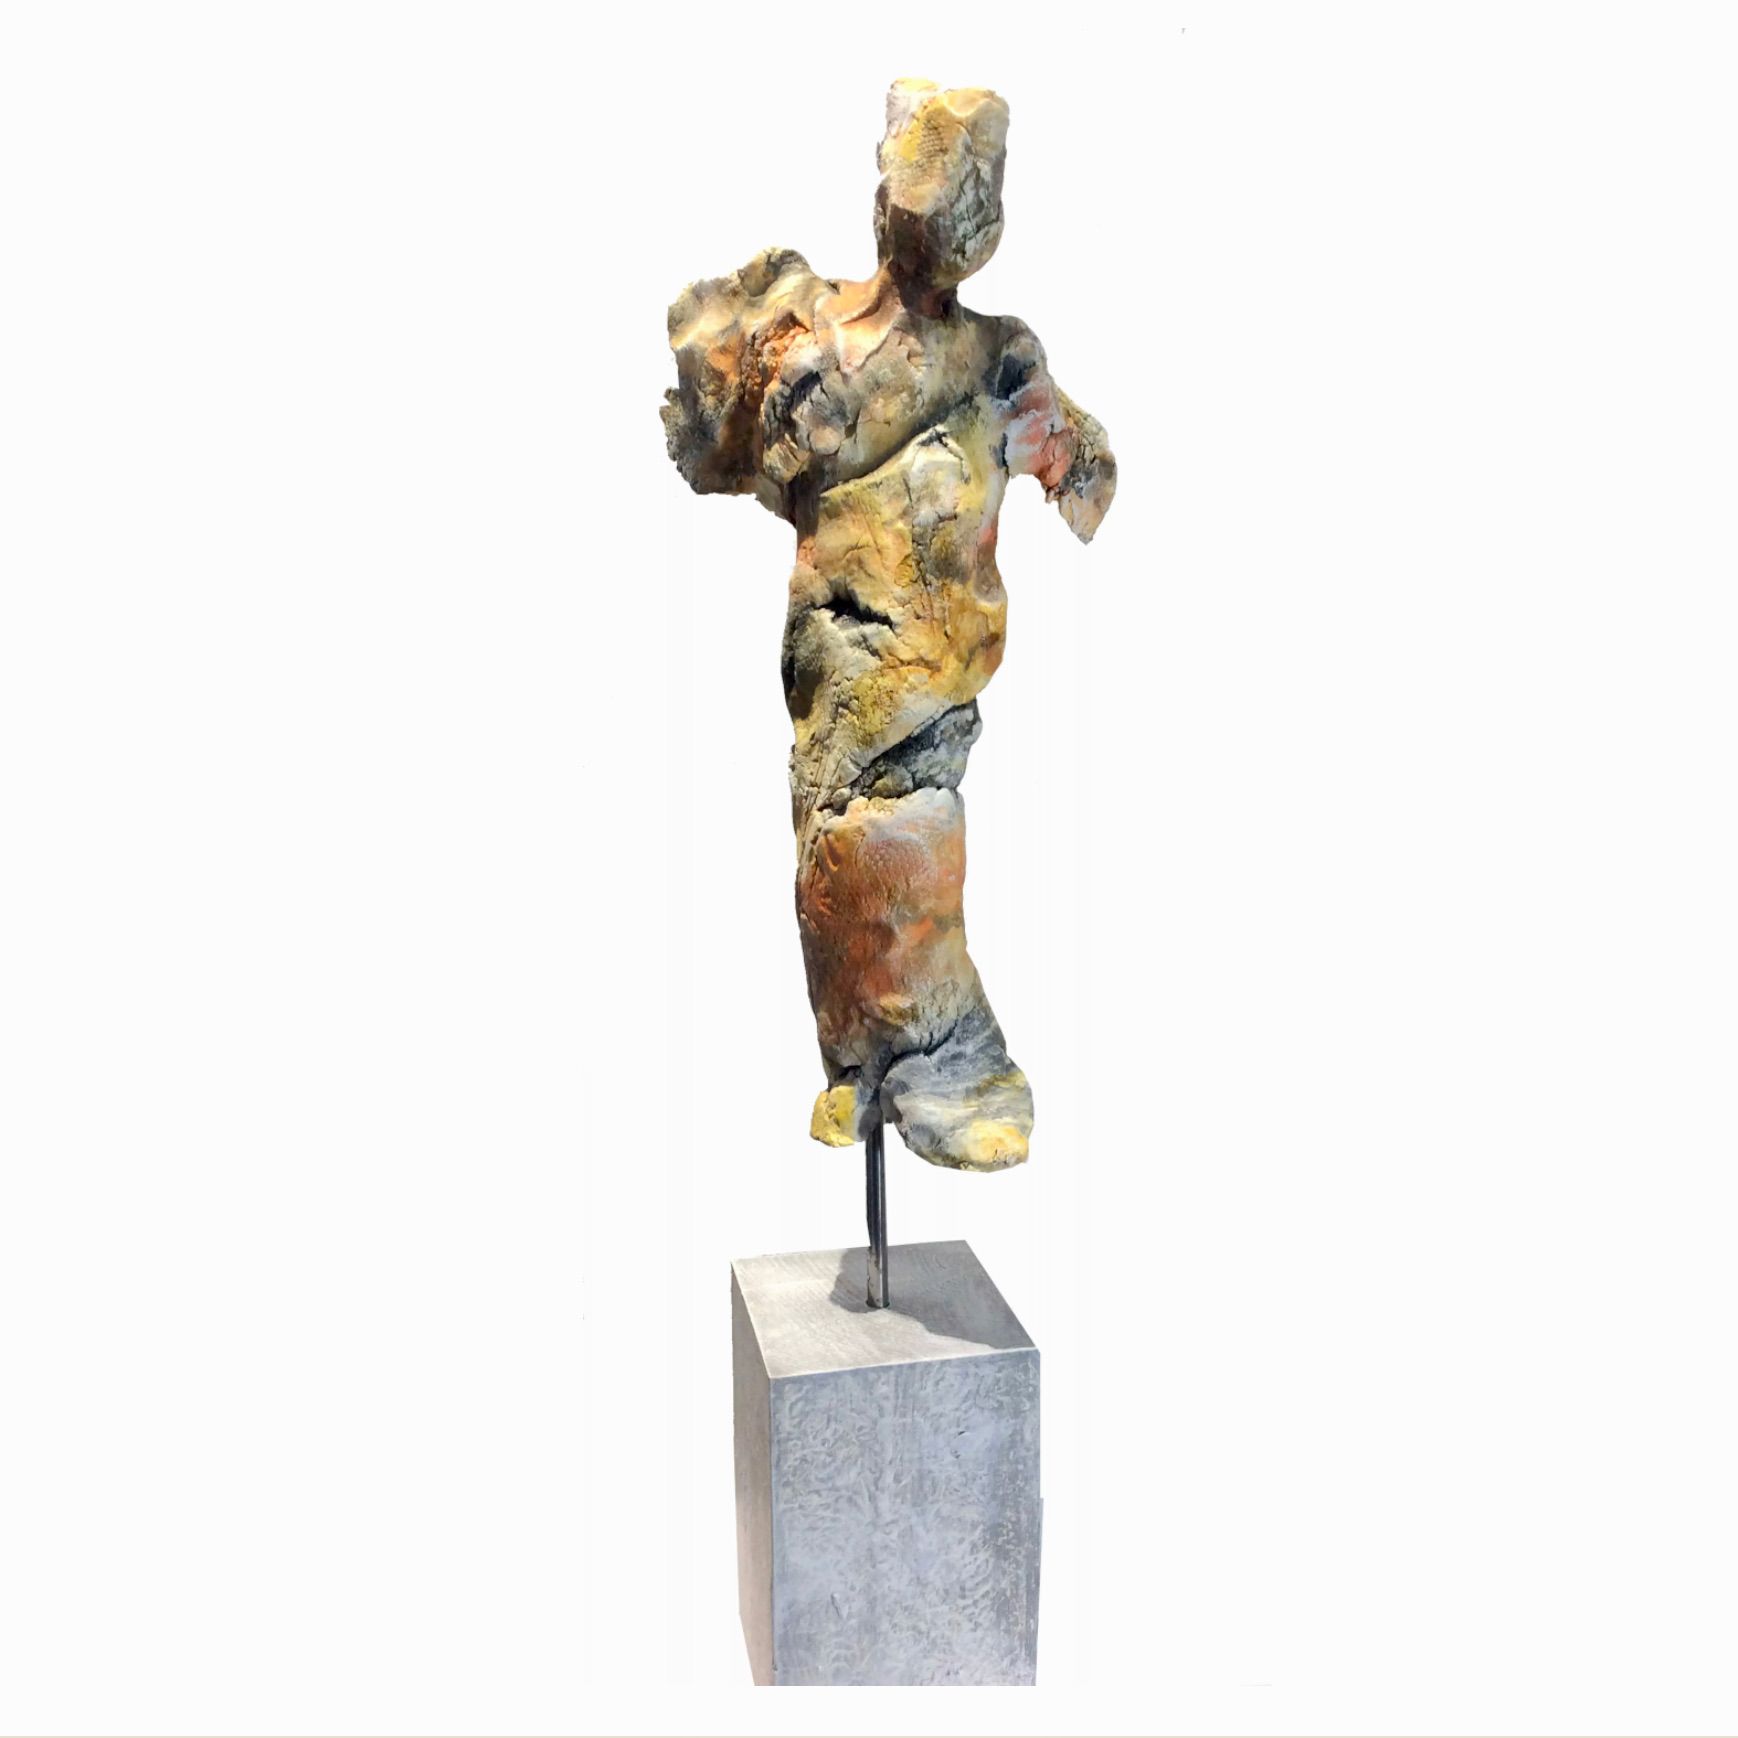 La "FIGURINE NR. XII" d'Ilona Schmidt présente une sculpture d'un corps modelé en argile, cuite, avec un support en bois et une patine de couleur froide.